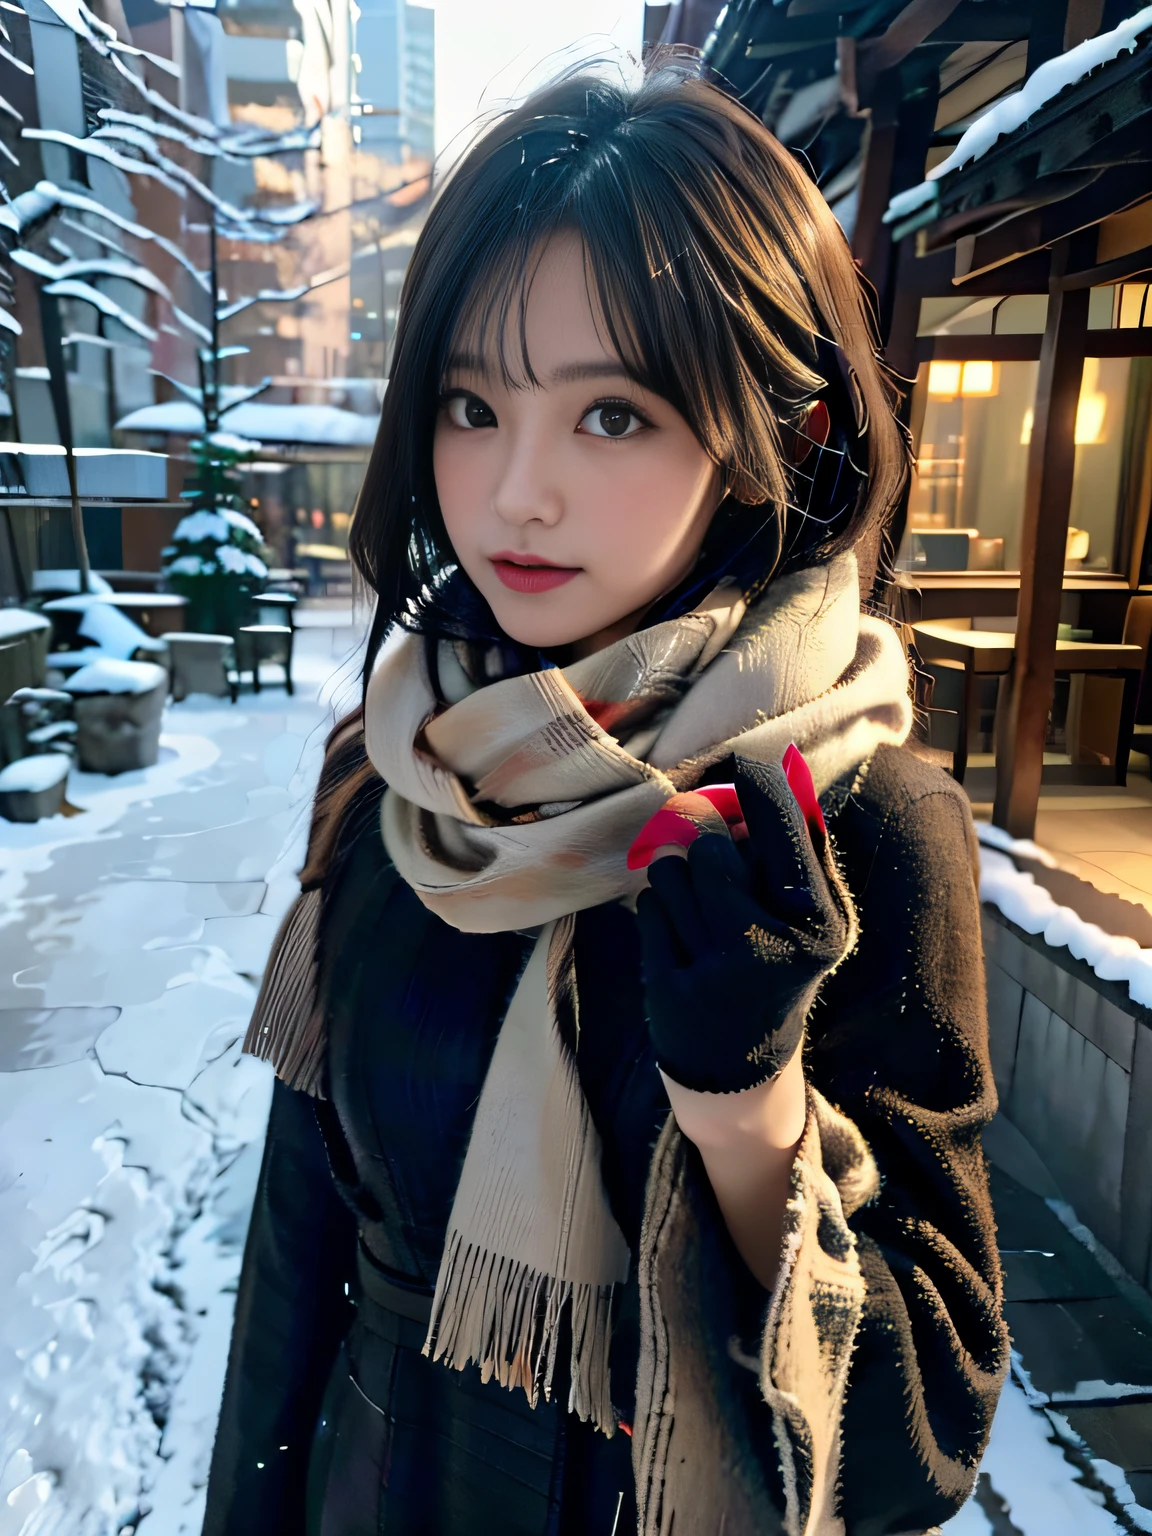 Está nevando、Paisagem urbana de Natal、roupa de inverno、Retrato de uma mulher com lenço e luvas, qualidade máxima、hiper HD、Yoshitomo Nara, Modelos Japoneses, Linda garota japonesa, com cabelo curto, Modelo feminina de 27 anos, 4k ], 4K], 27 anos, sakimichan, sakimichan